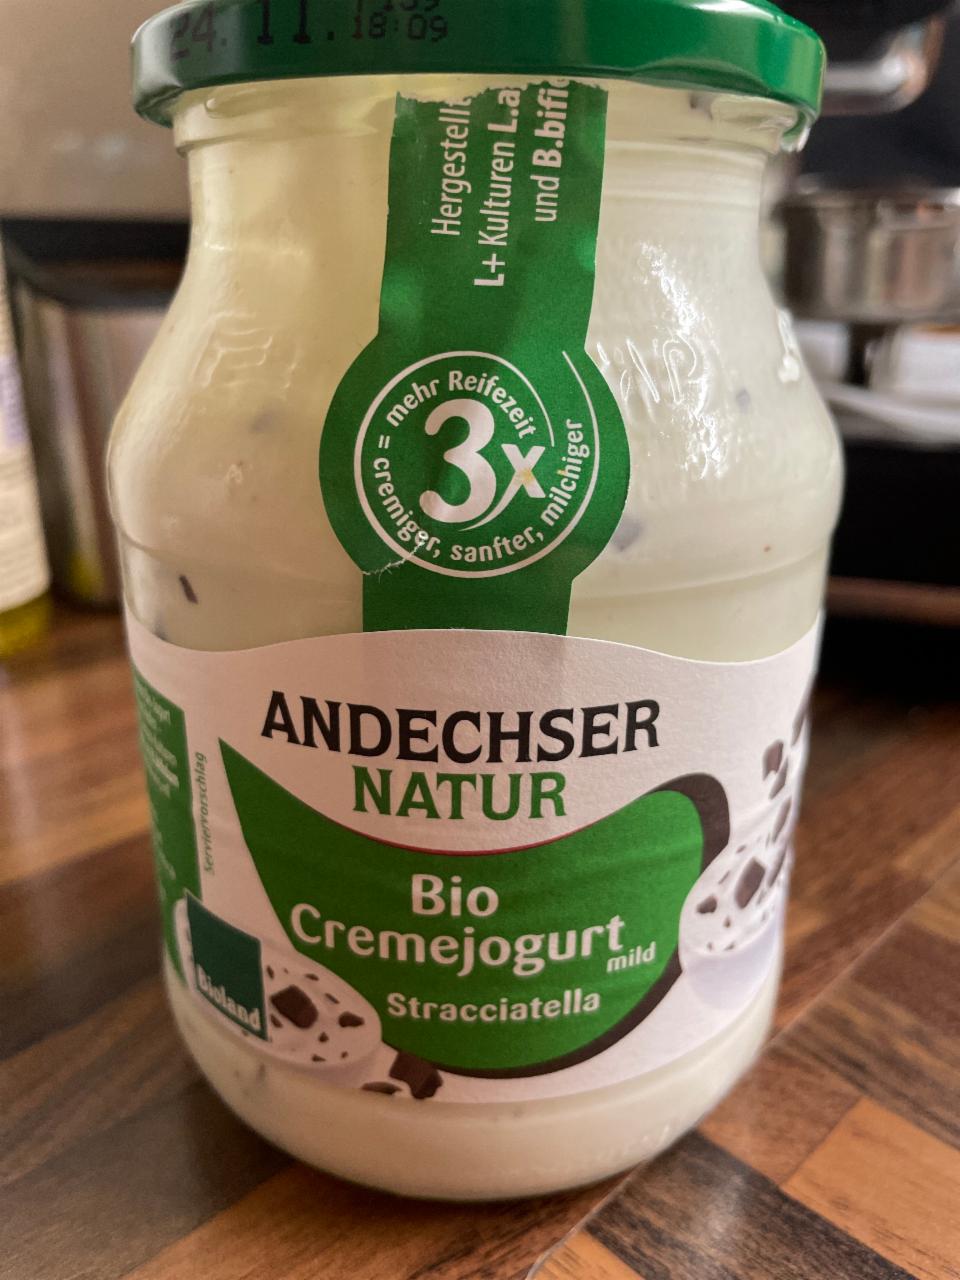 Fotografie - Bio Cremejogurt mild Stracciatella Andechser Natur